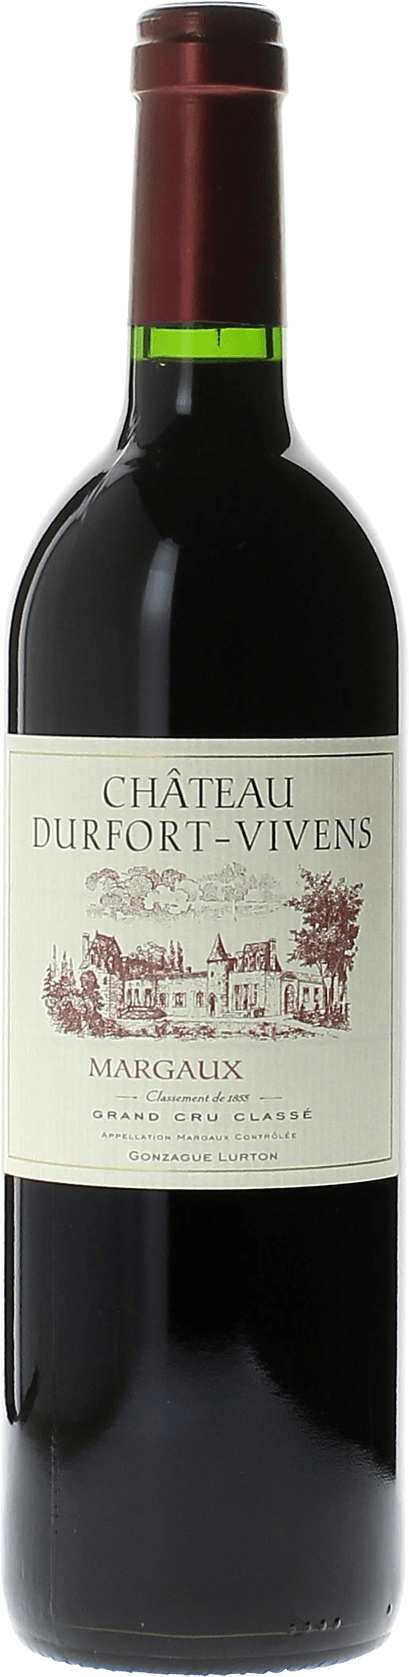 Durfort vivens 2003 2me Grand cru class Margaux, Bordeaux rouge